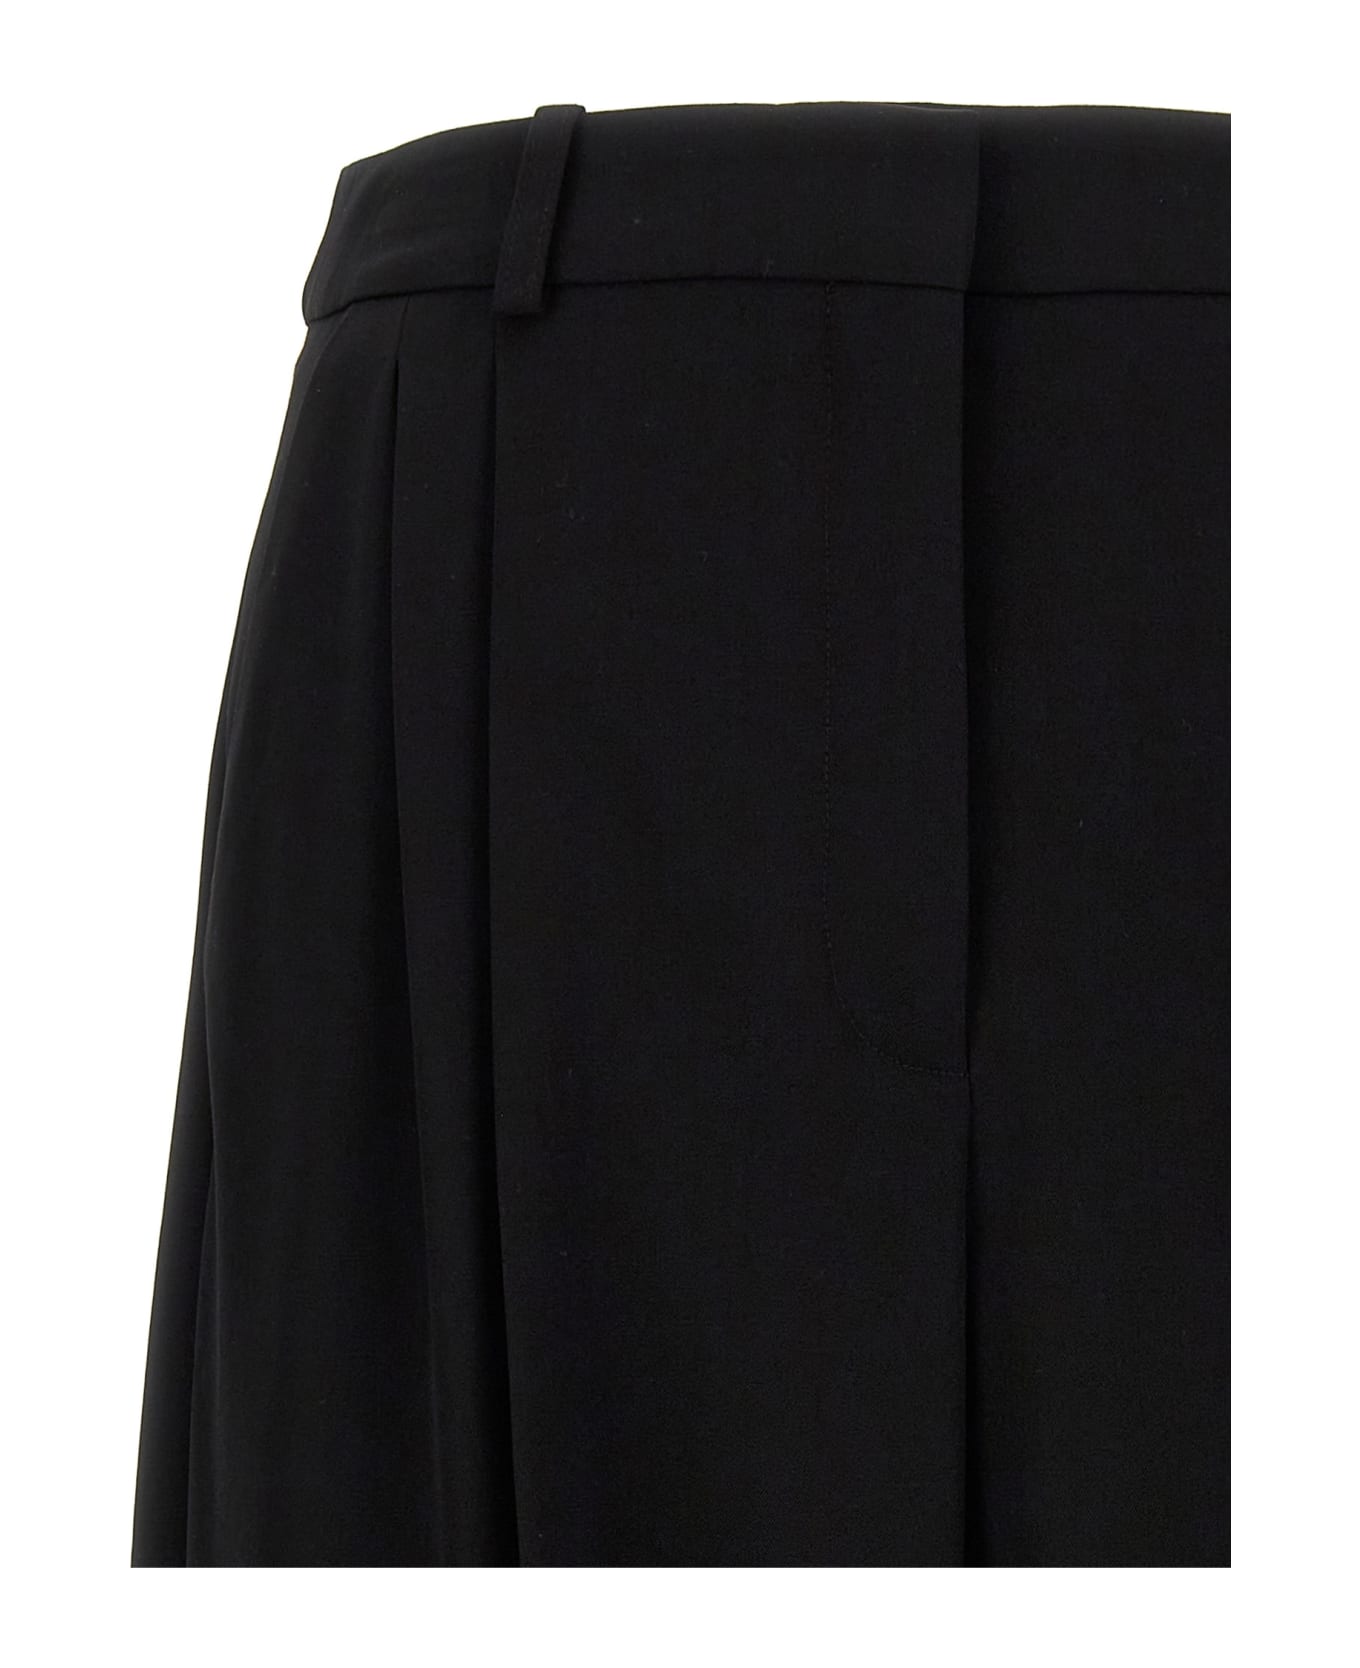 Stella McCartney Logo Detailed Tailored Pants - Black ボトムス